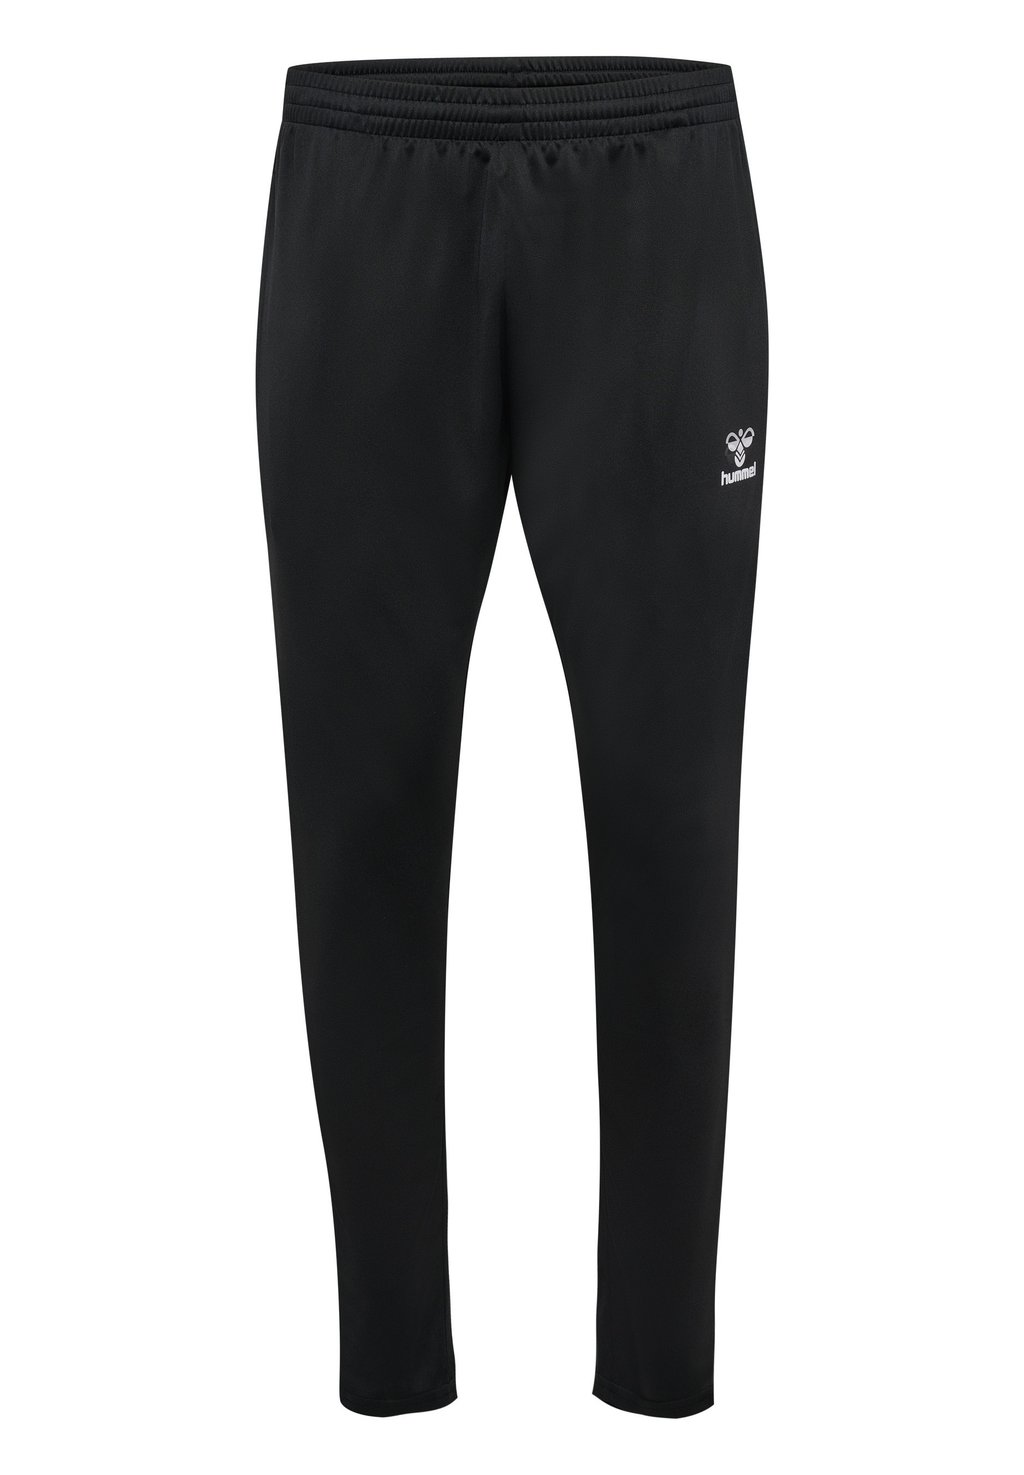 Спортивные брюки Essential Hummel, черный спортивные брюки essential siksilk черный